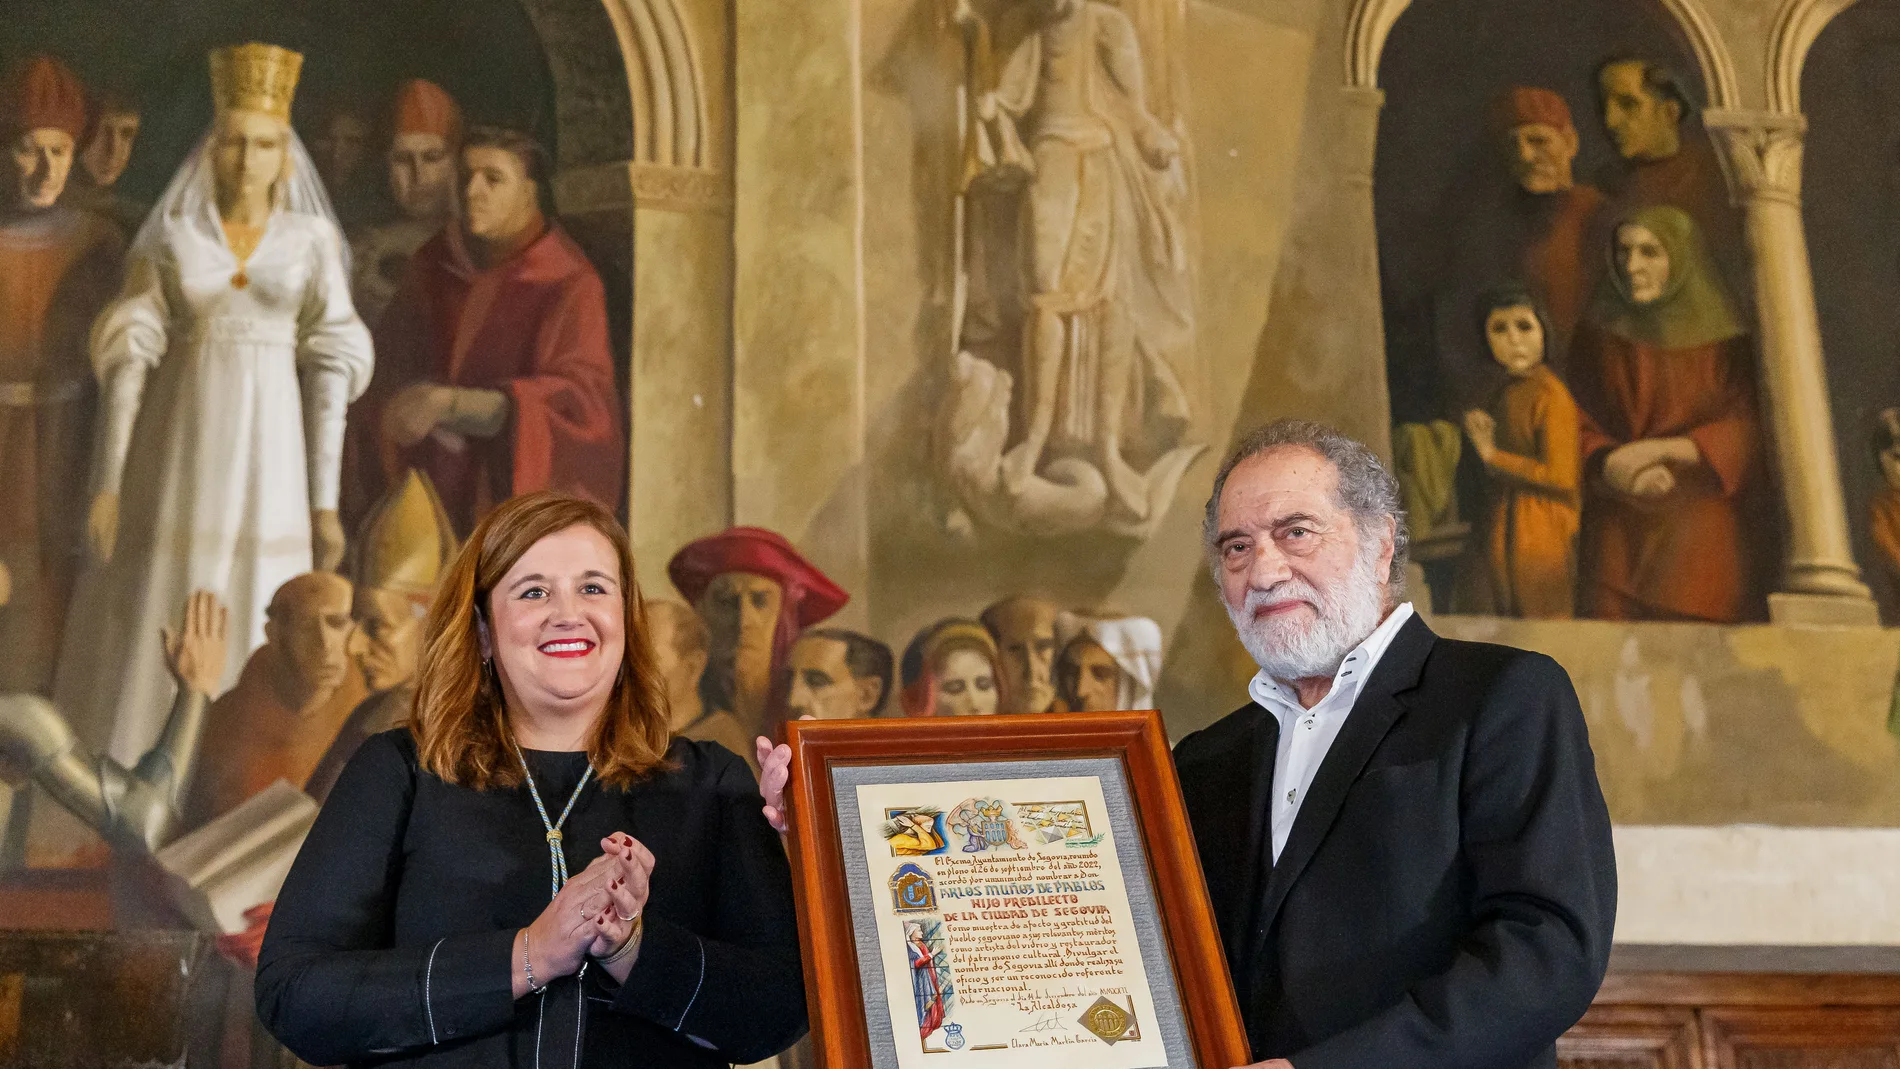 La alcaldesa de Segovia, Clara Martín, entrega el título de Hijo Predilecto de Segovia al artista, pintor y vitralista Carlos Muñoz de Pablos en un acto solemne